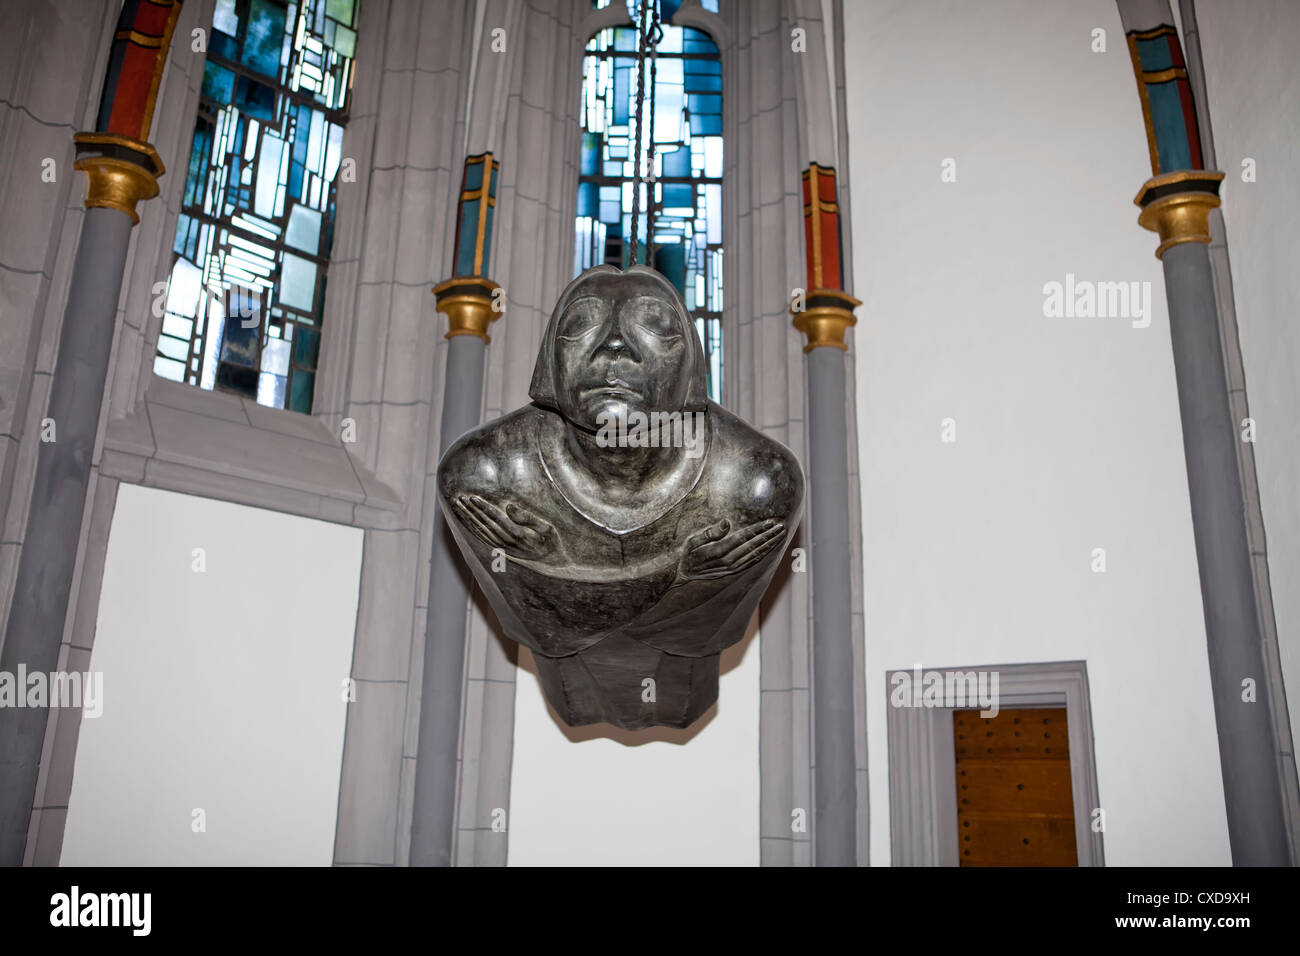 Ange planant, la sculpture avec les traits du visage de Kaethe Kollwitz, par Ernst Barlach, Antonitrekirche église, Allemagne Banque D'Images